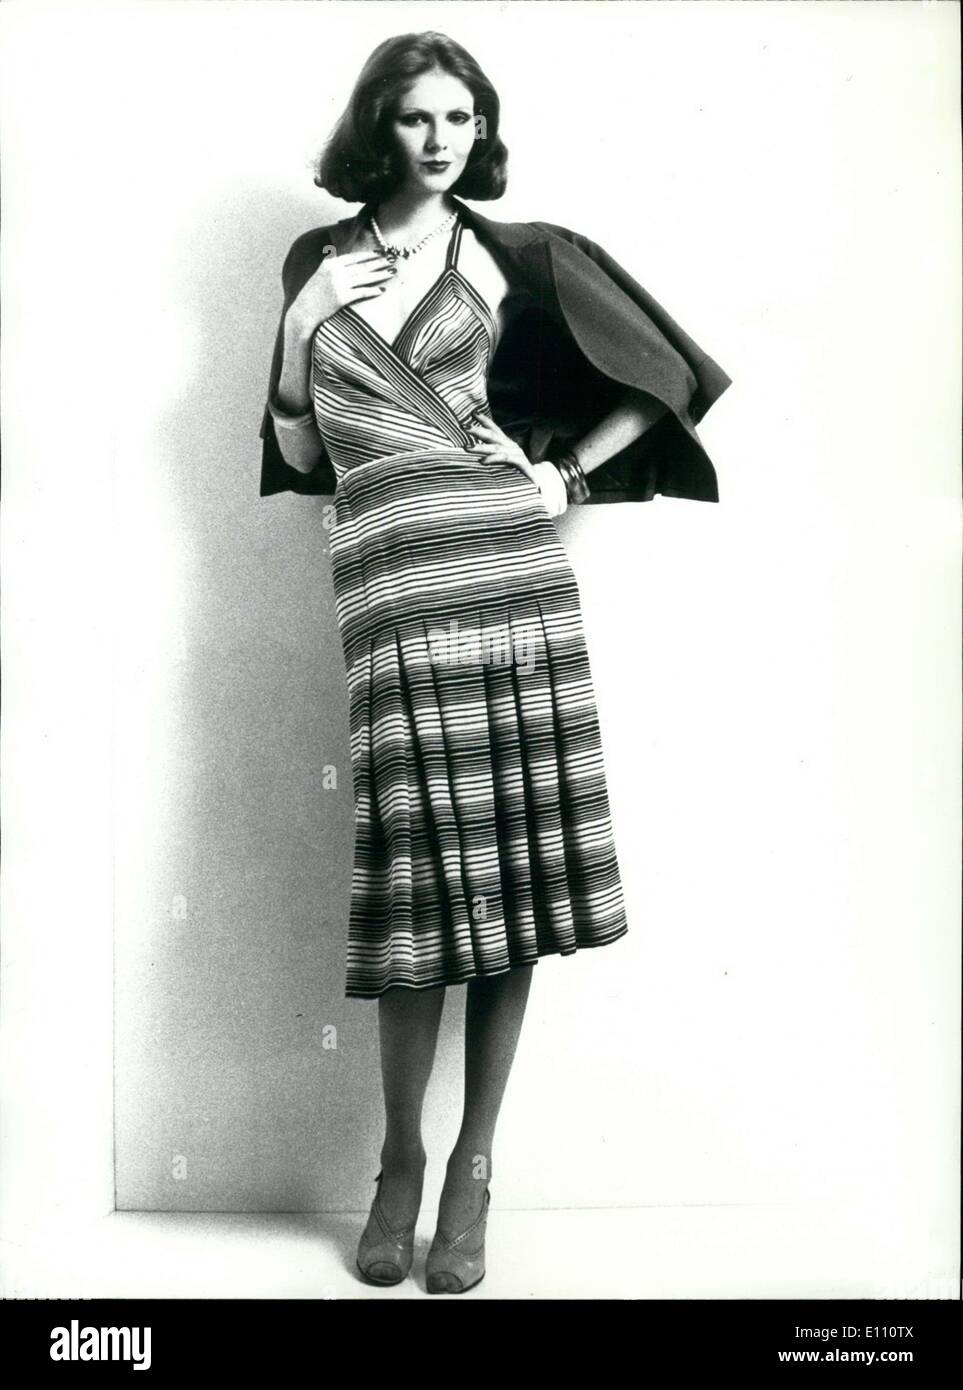 20 novembre 1974 - noir, blanc, et gris robe en soie à rayures avec un gilet gris en toile. Banque D'Images